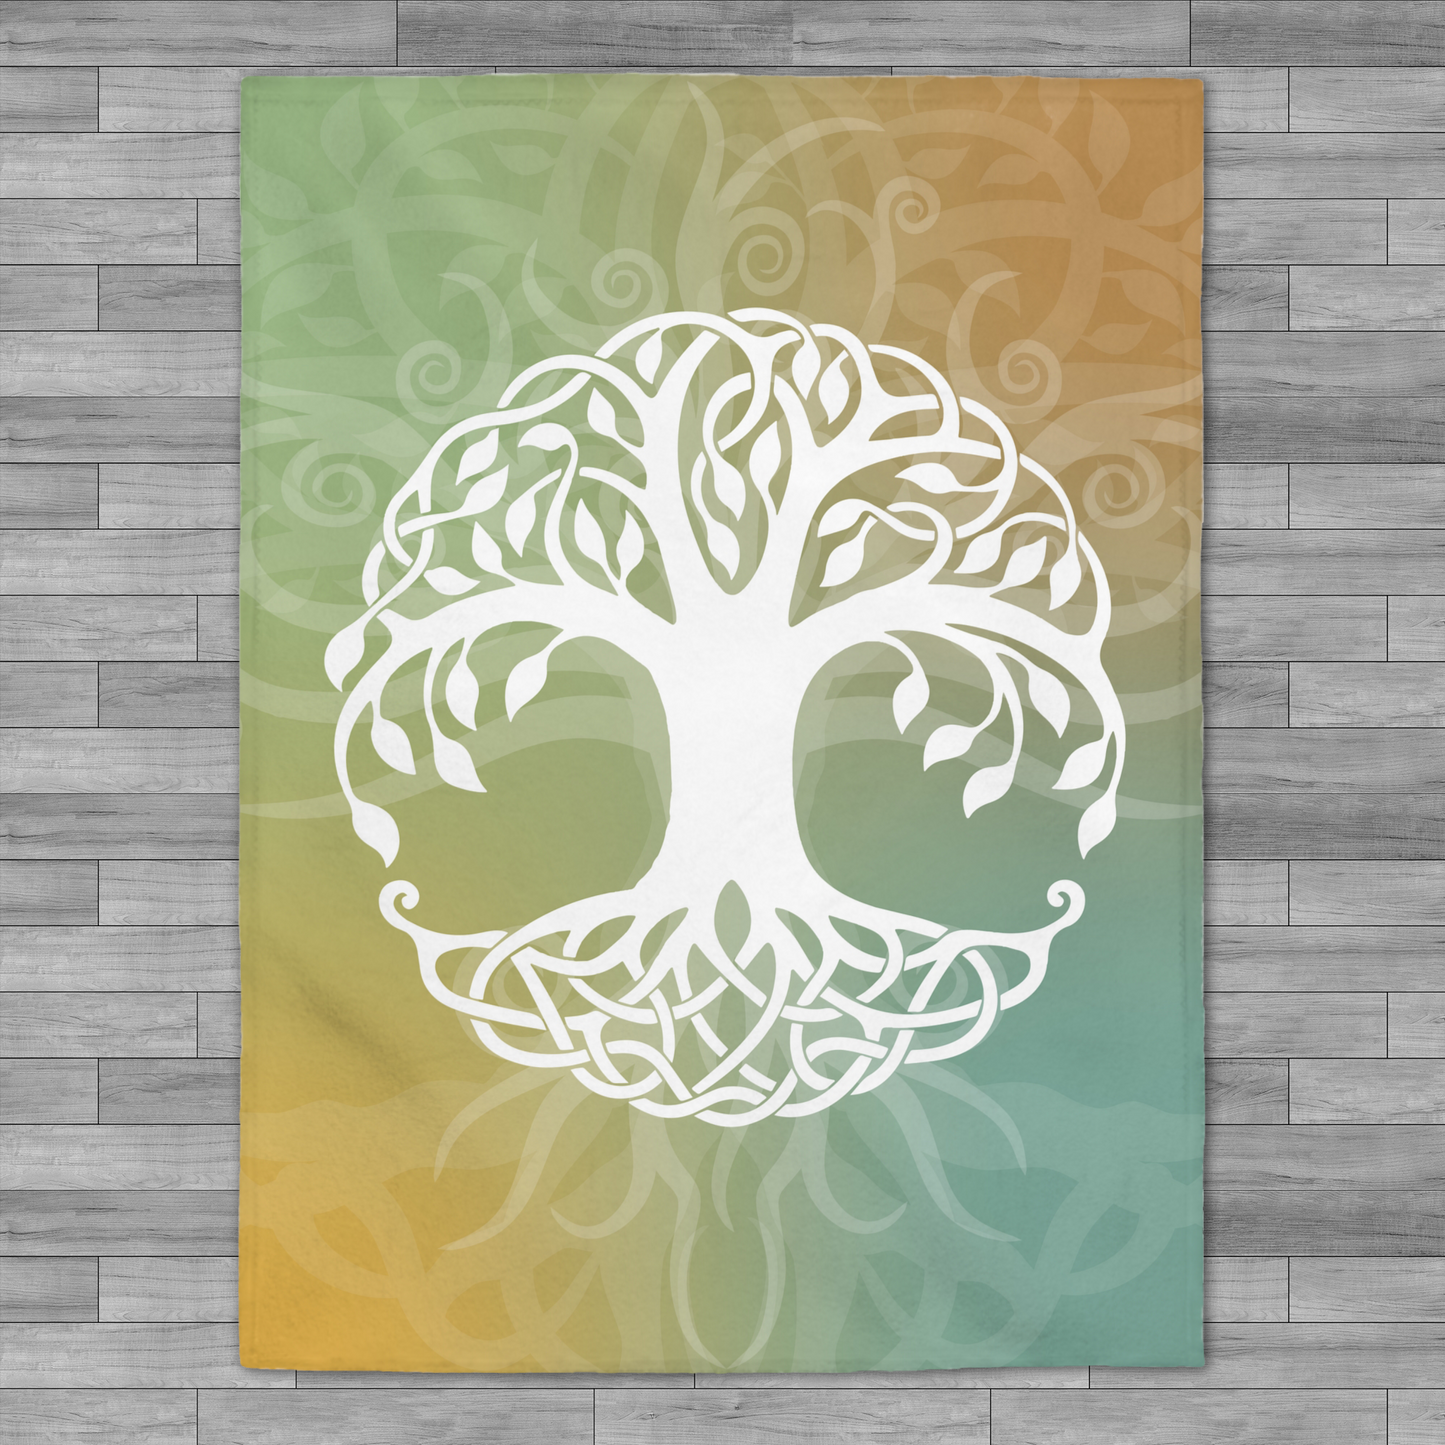 Yggdrasil World Tree of Life Velveteen Plush Throw Blanket